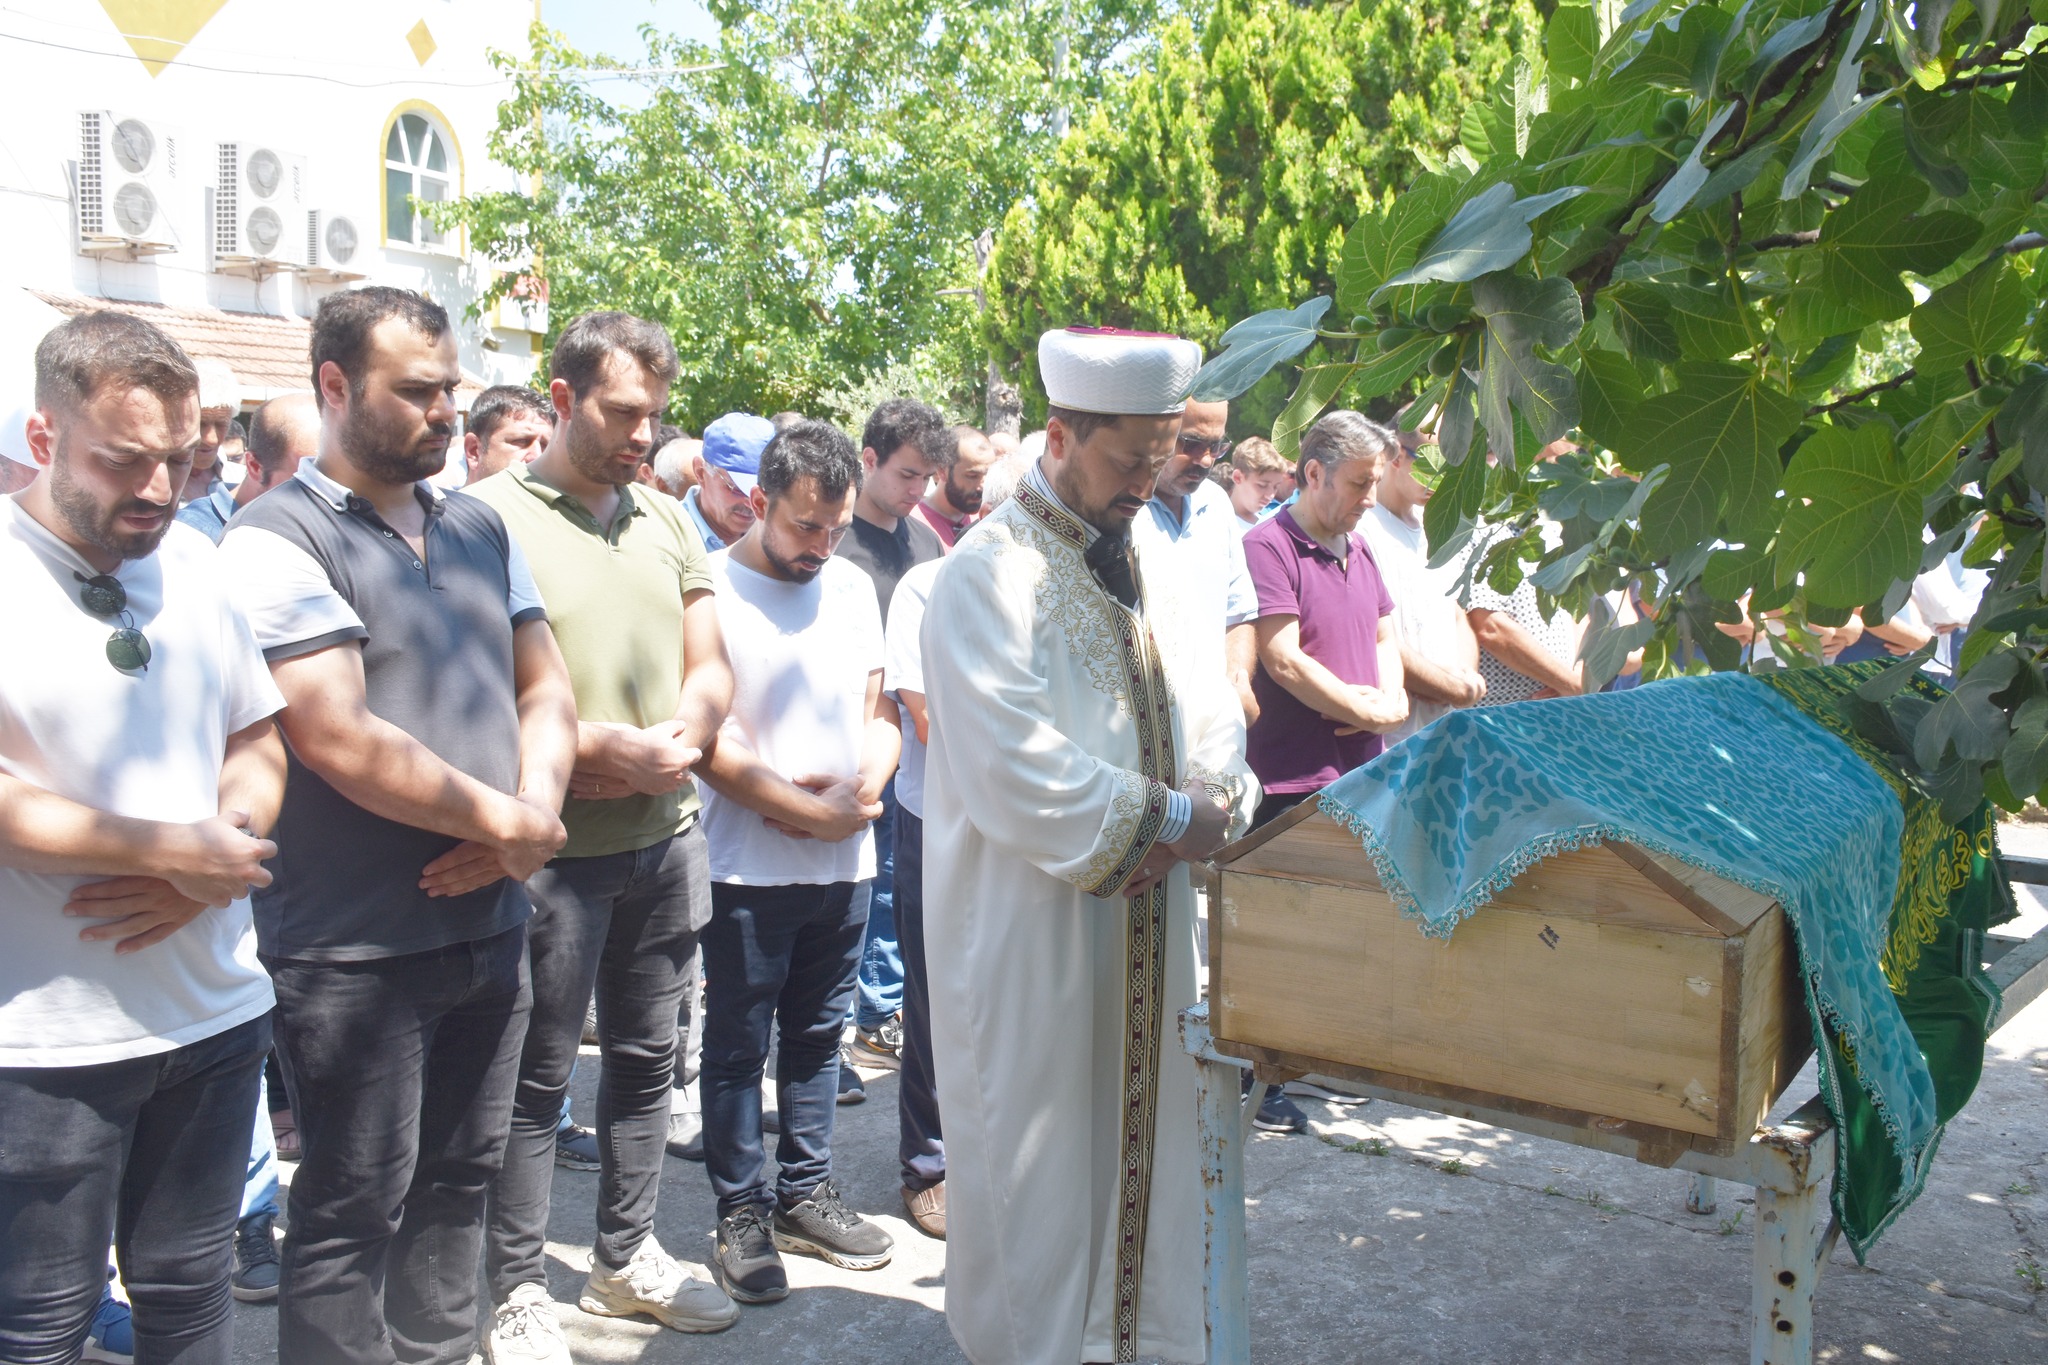 Belediye Başkanımız Hüseyin Kıyma, ilçemiz Kozköy mahallesi halkından vefat eden Behiye Bayraktar’ın cenaze namazına katılarak, ailesine ve yakınlarına başsağlığında bulundu.